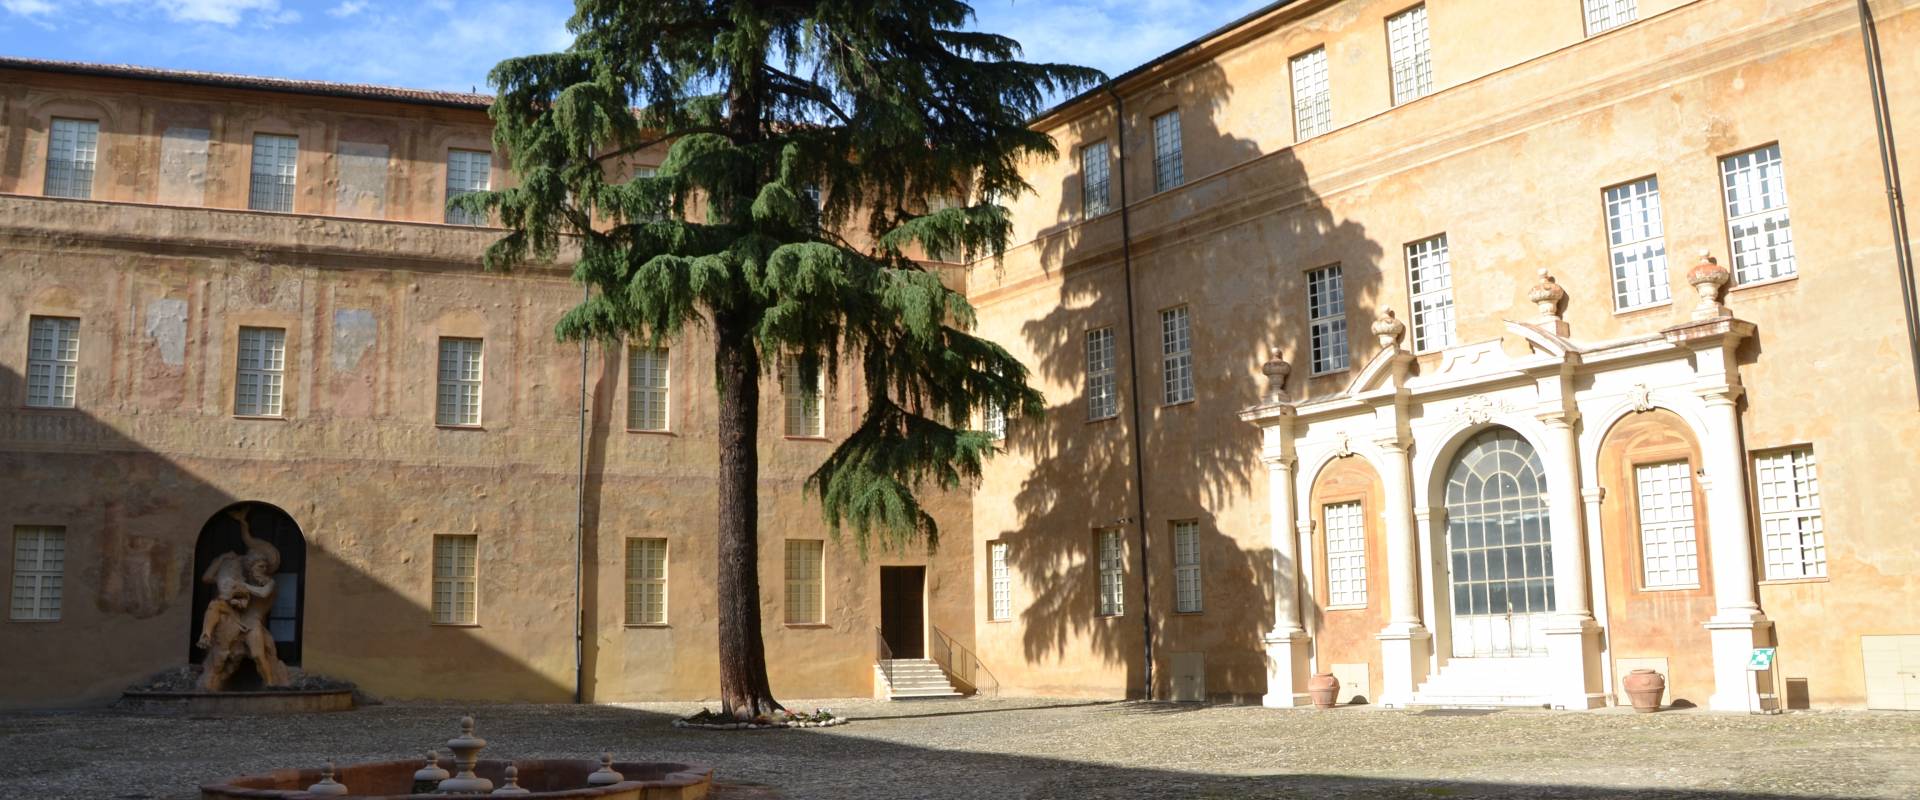 Palazzo ducale (Sassuolo) - Modena 06 foto di Carlo Dell'Orto